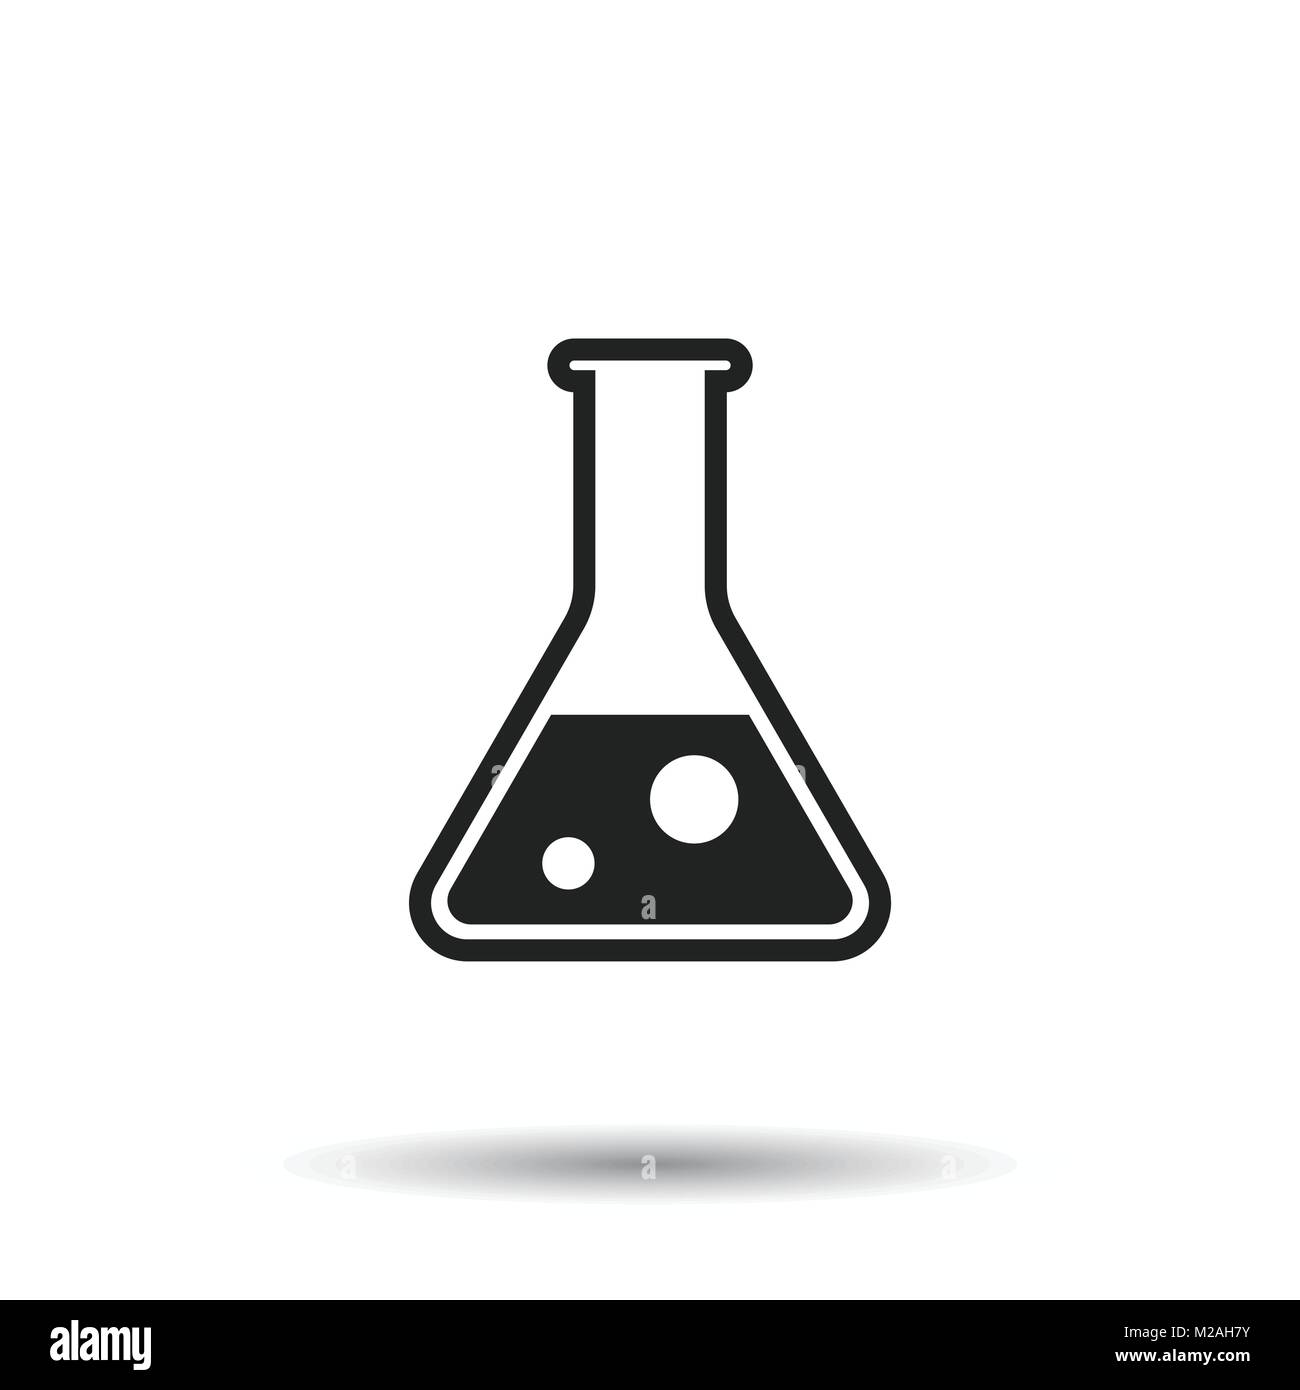 Hình ảnh biểu tượng ống nghiệm hóa học là một món quà cho những ai yêu thích nghiên cứu và khám phá khoa học. Điều đặc biệt trong hình ảnh là khả năng điều chỉnh và thí nghiệm các hóa chất mới mẻ, giúp bạn khám phá thêm về các phản ứng hóa học hấp dẫn.